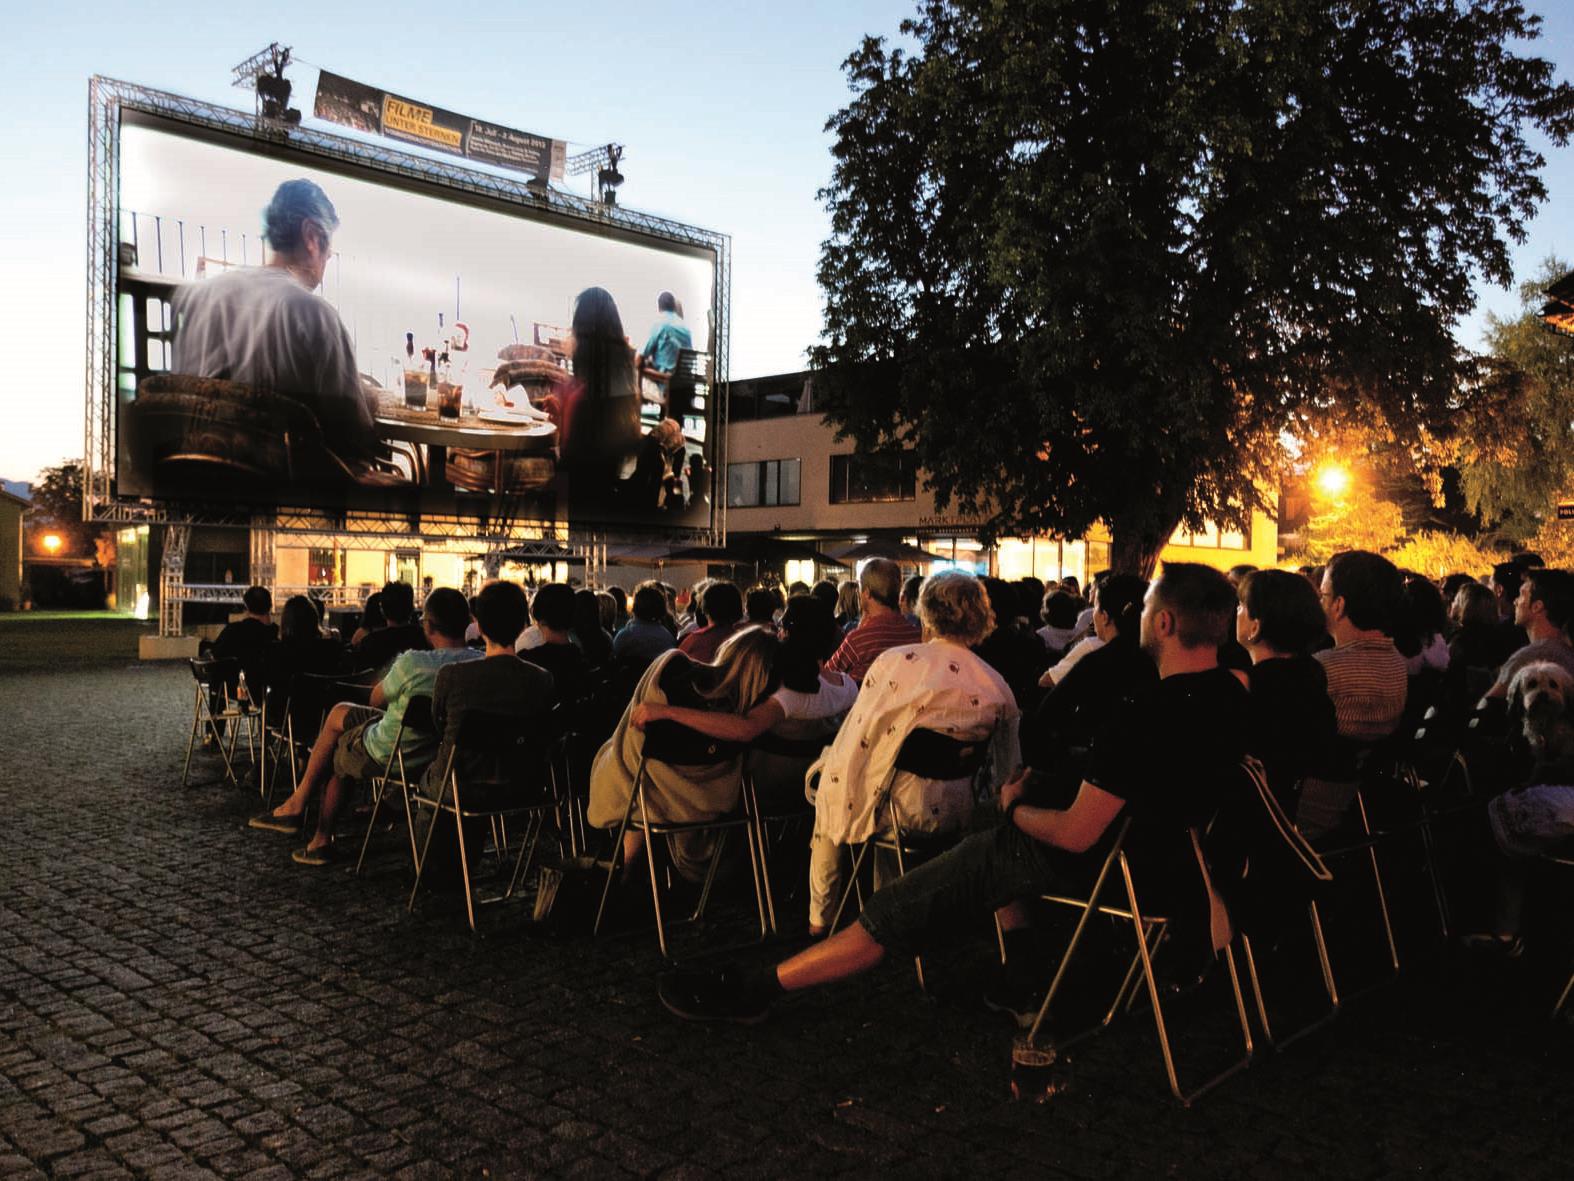 "Filme unter Sternen", jeweils Mittwoch, Donnerstag und Freitag am Rankweiler Marktplatz vom 23. Juli bis 8. August. Bei Schlechtwetter im Alten Kino.